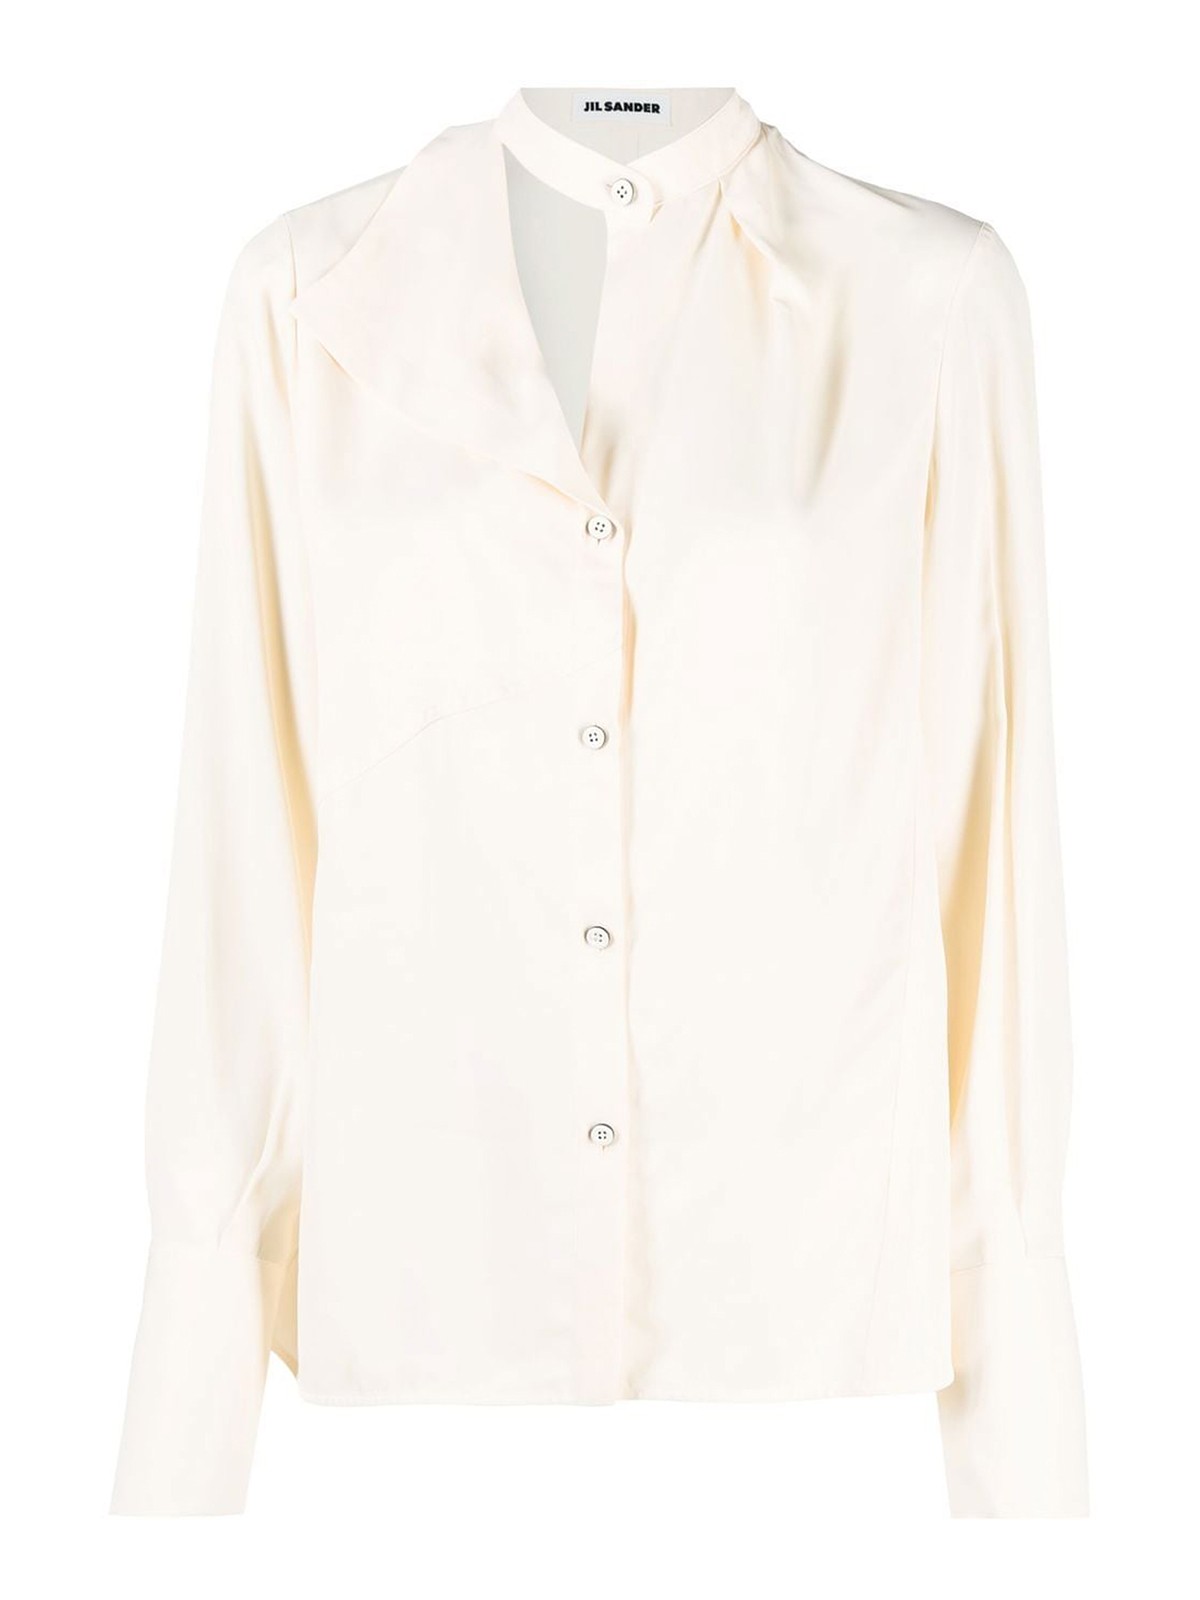 Jil Sander Asymmetric Shirt In White